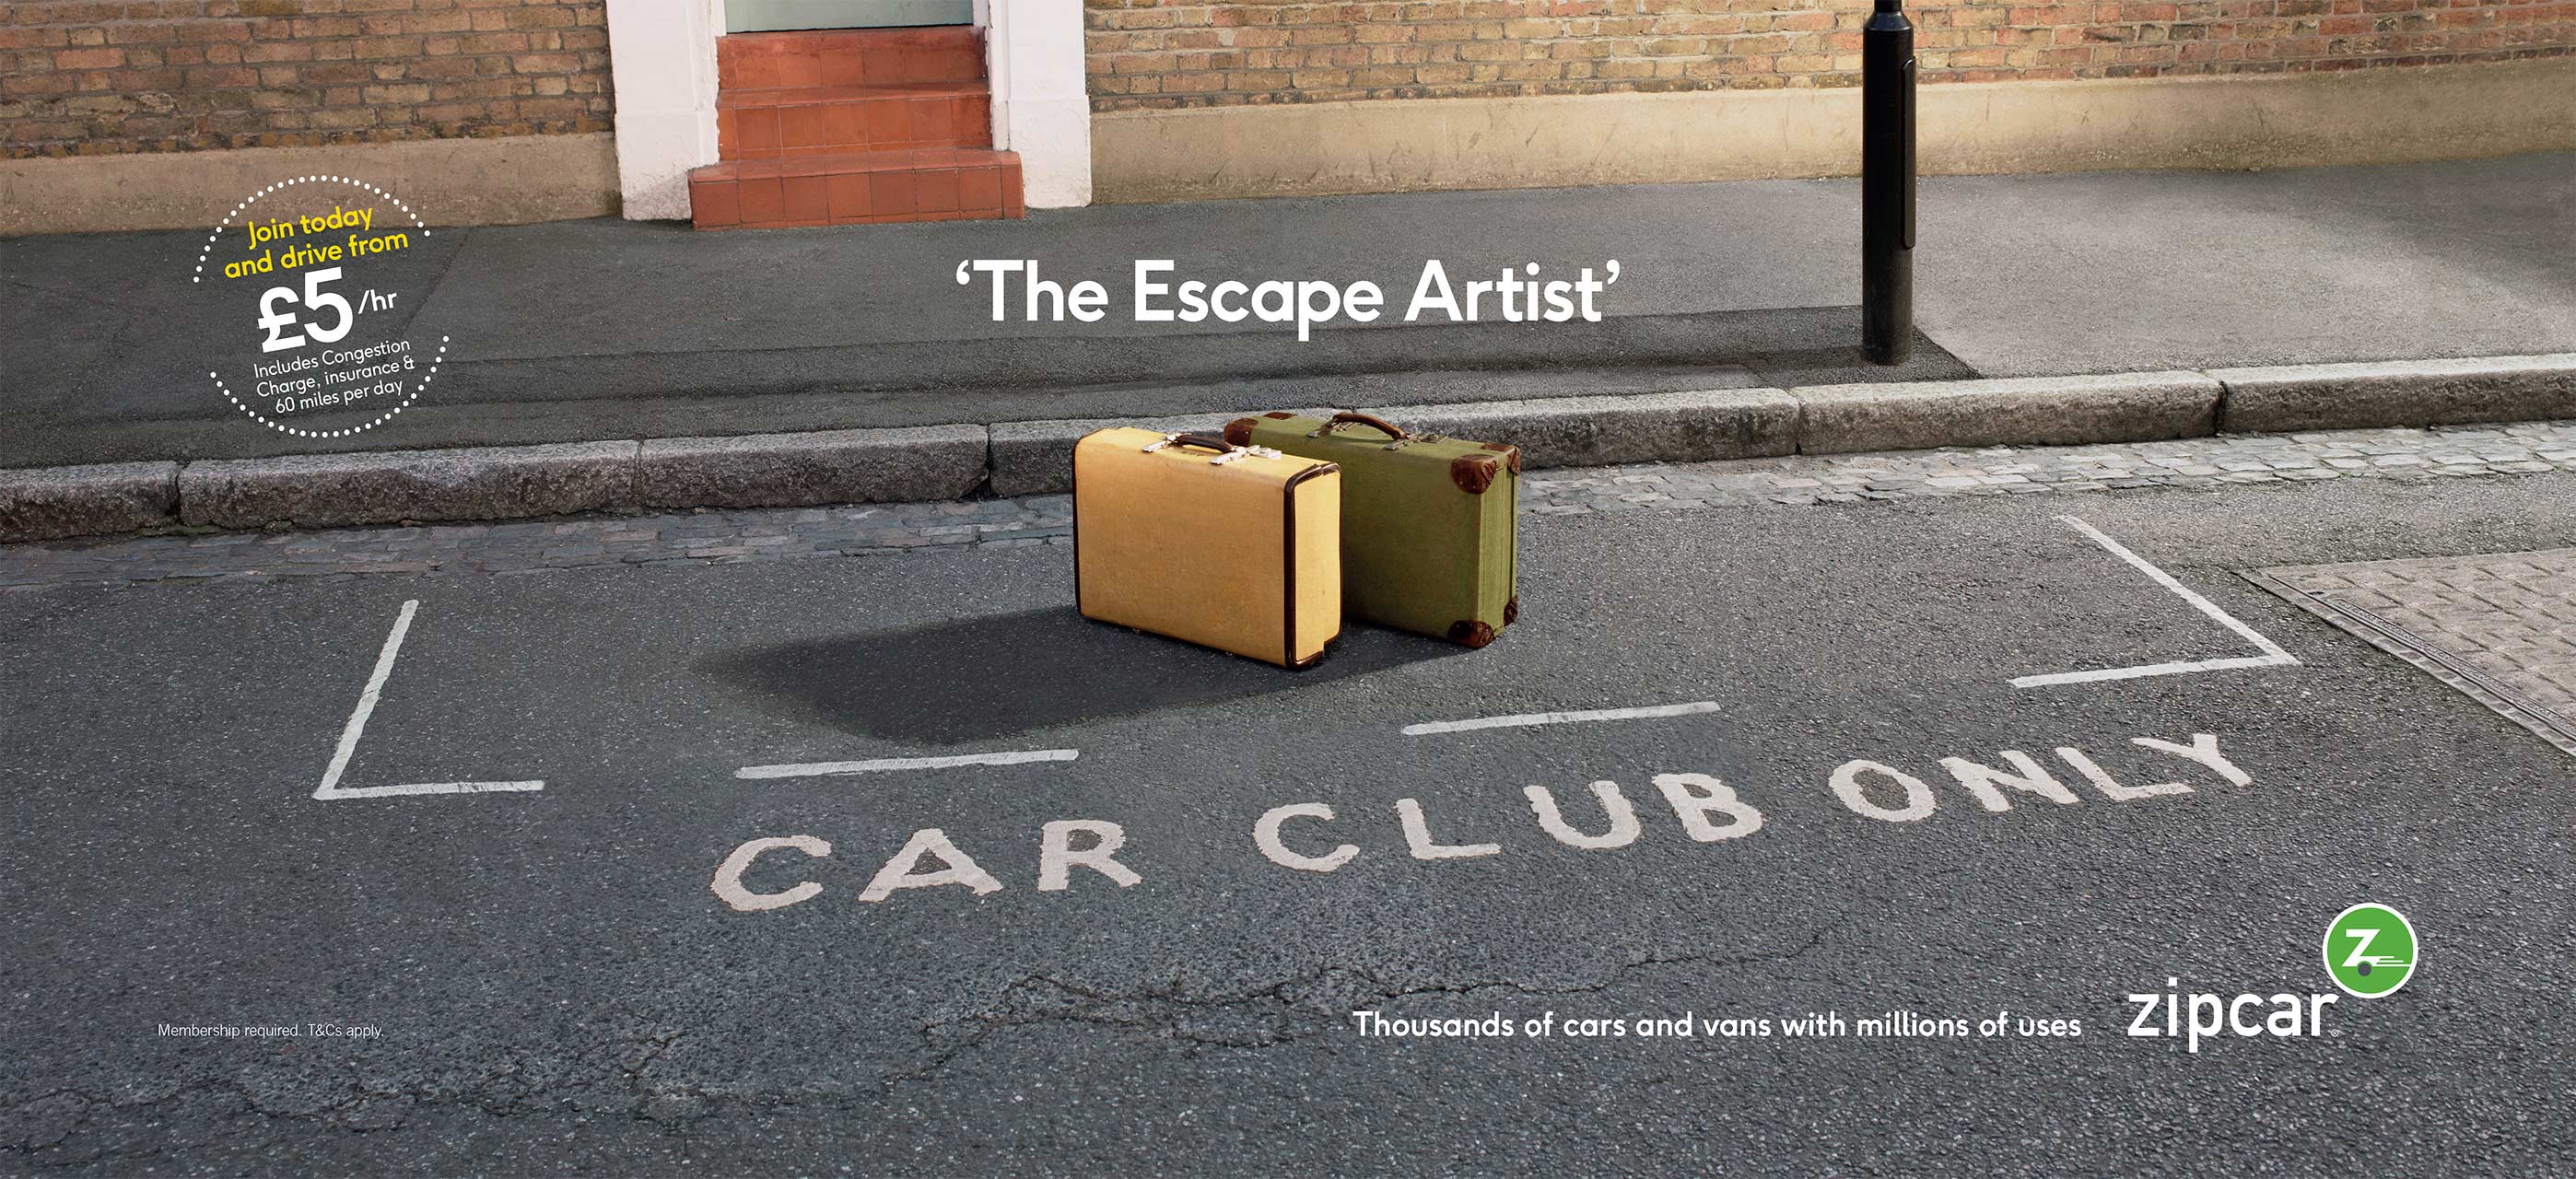 ZipCar_Escape-Artist_Ad_WEB2